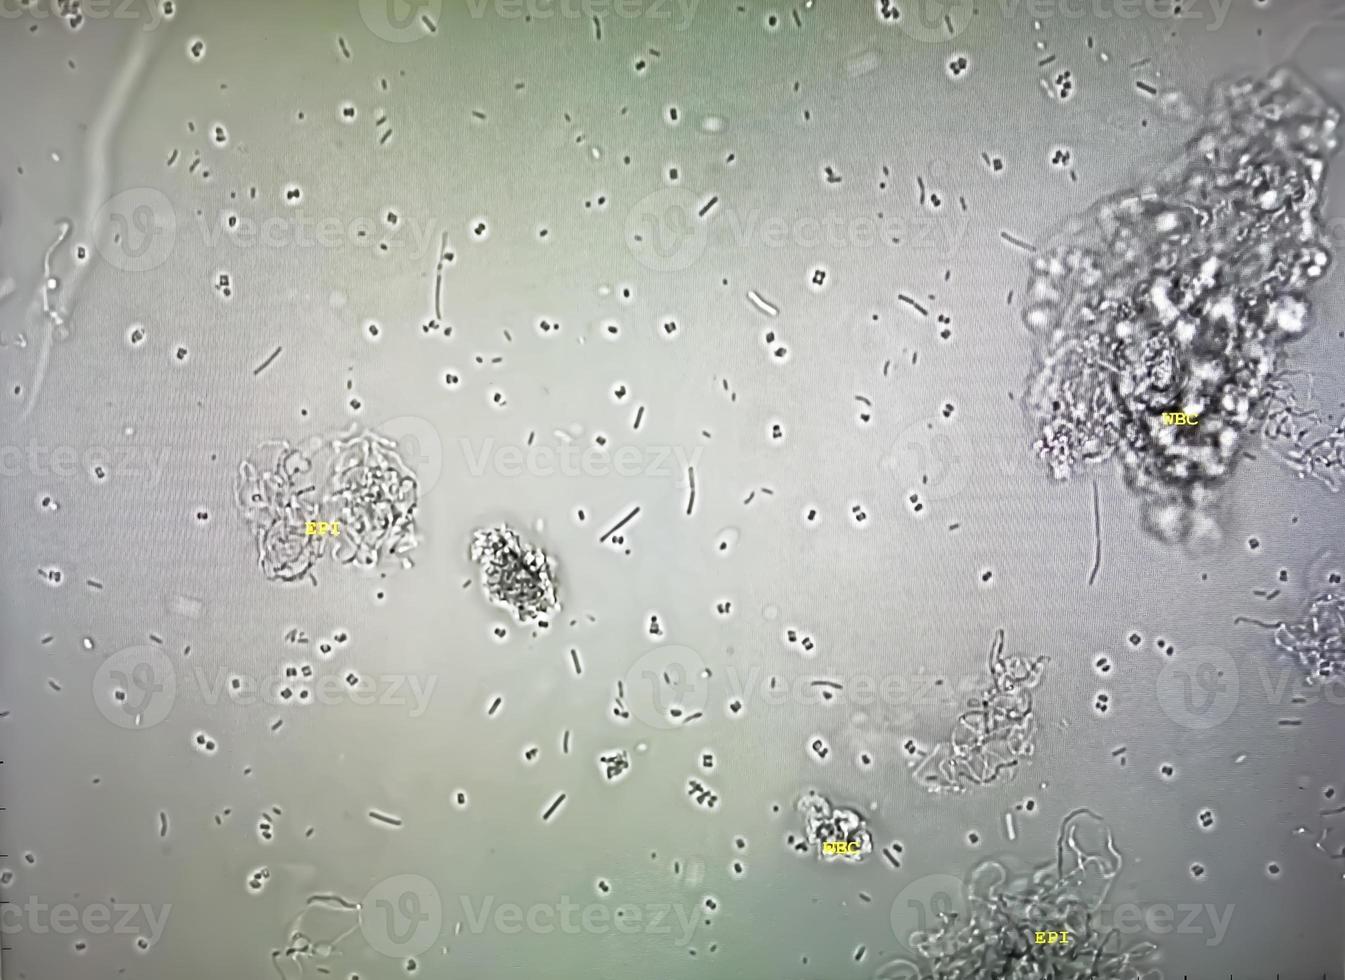 microscopisch beeld van abnormaal urineonderzoek. urine examen. urine routine- inspectie. foto